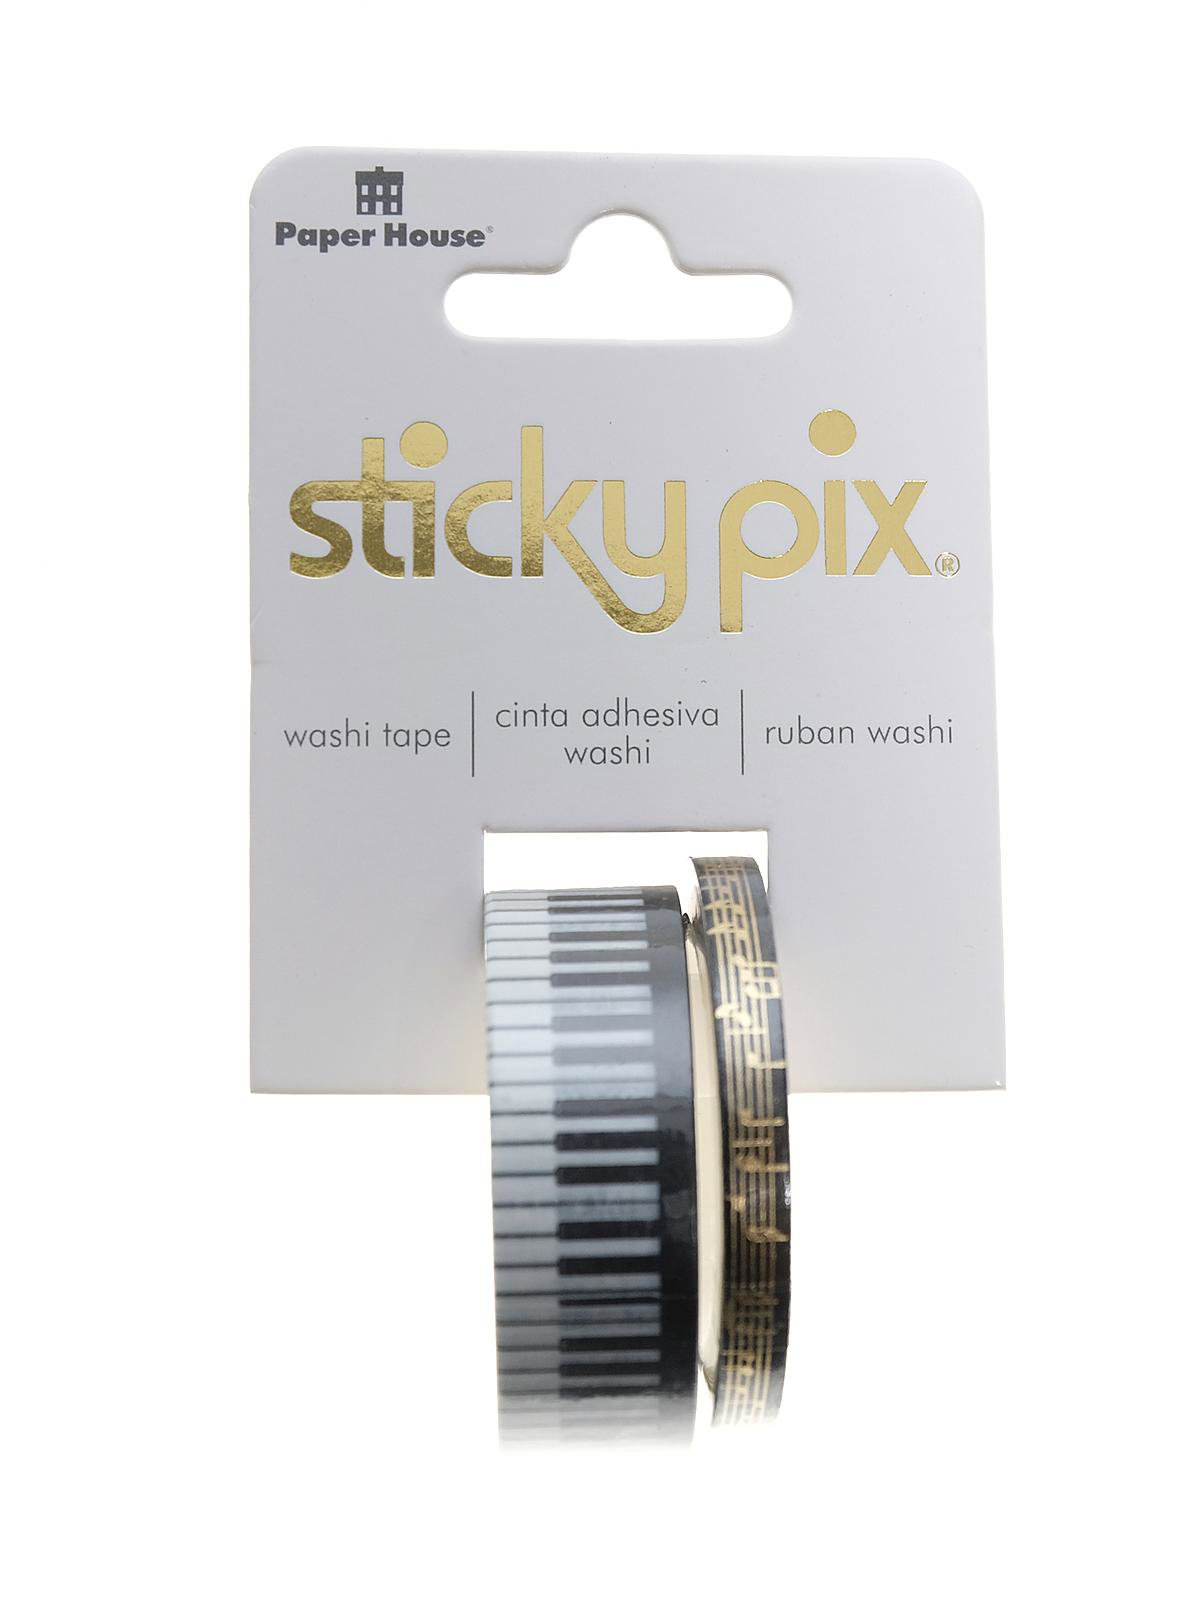 Sticky Pix